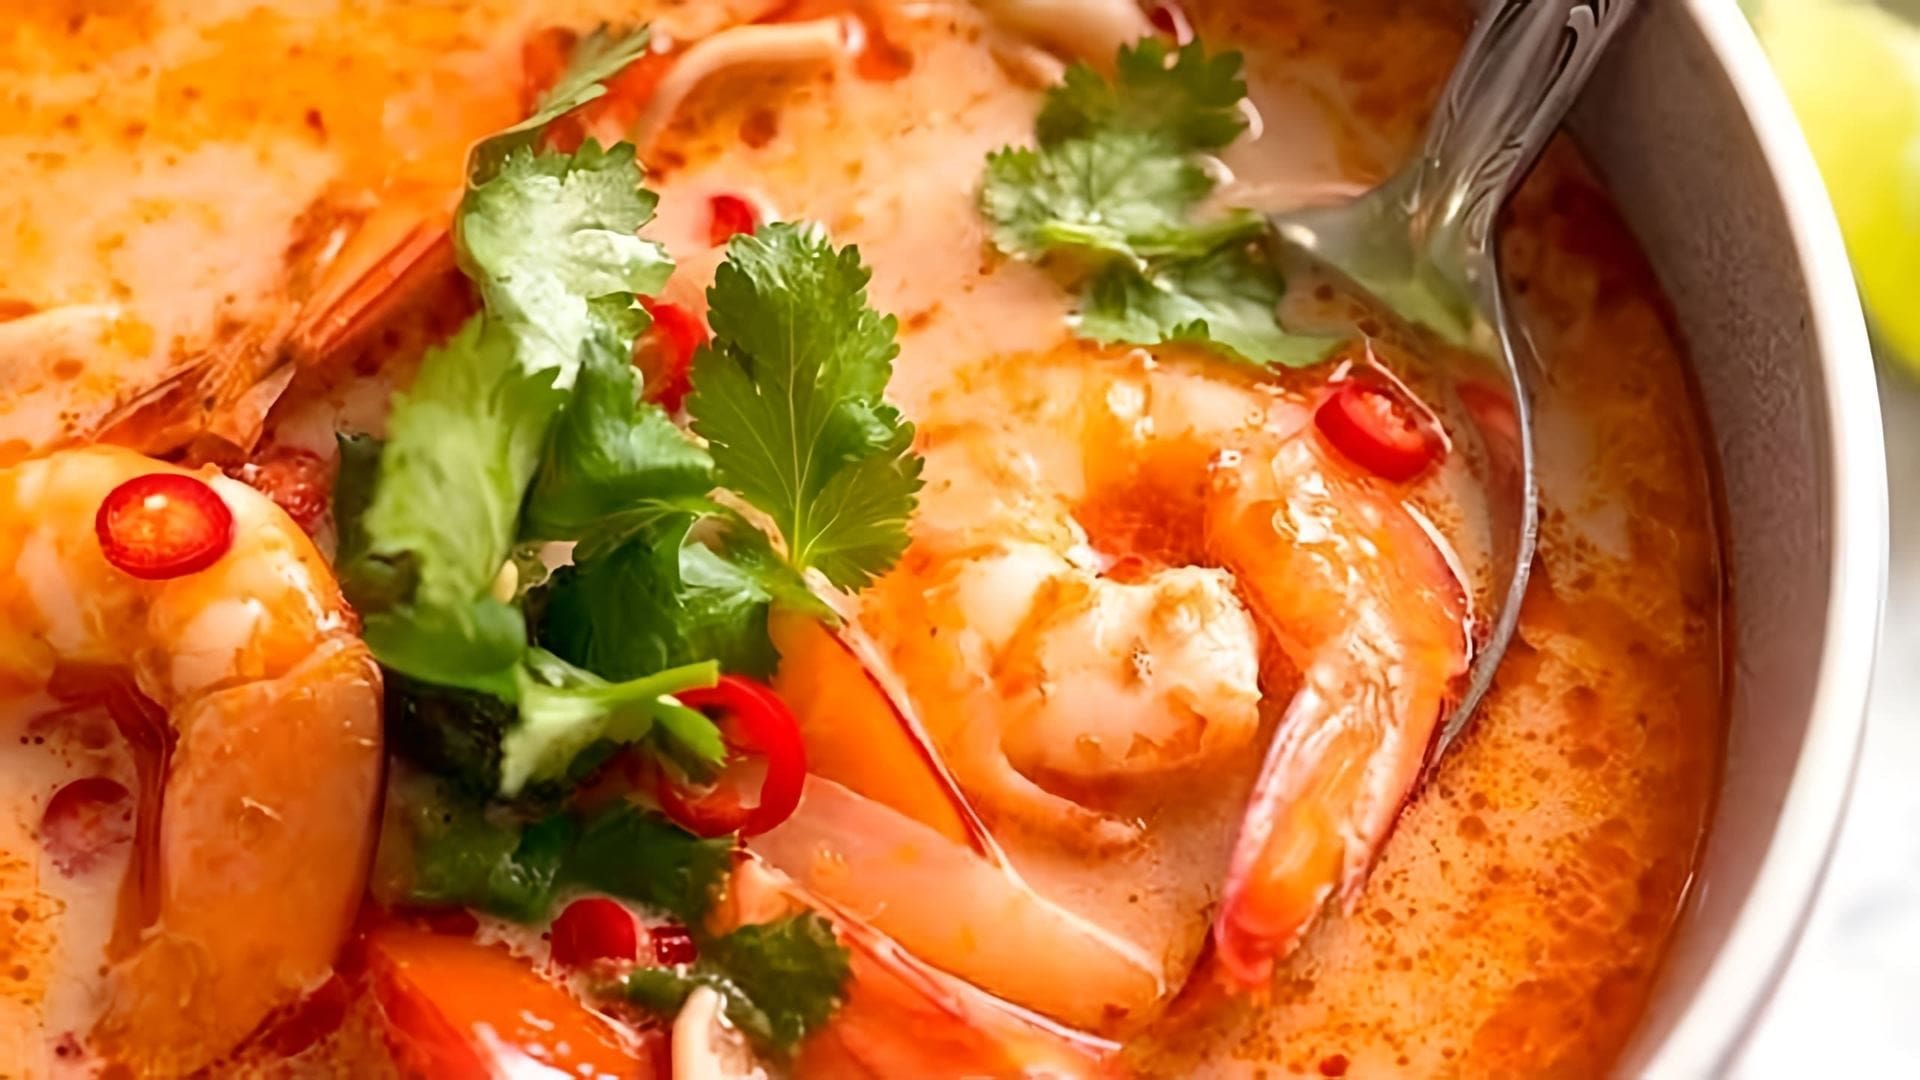 Видео рецепт том-ям-супа из Таиланда, который легко приготовить дома всего за 15 минут